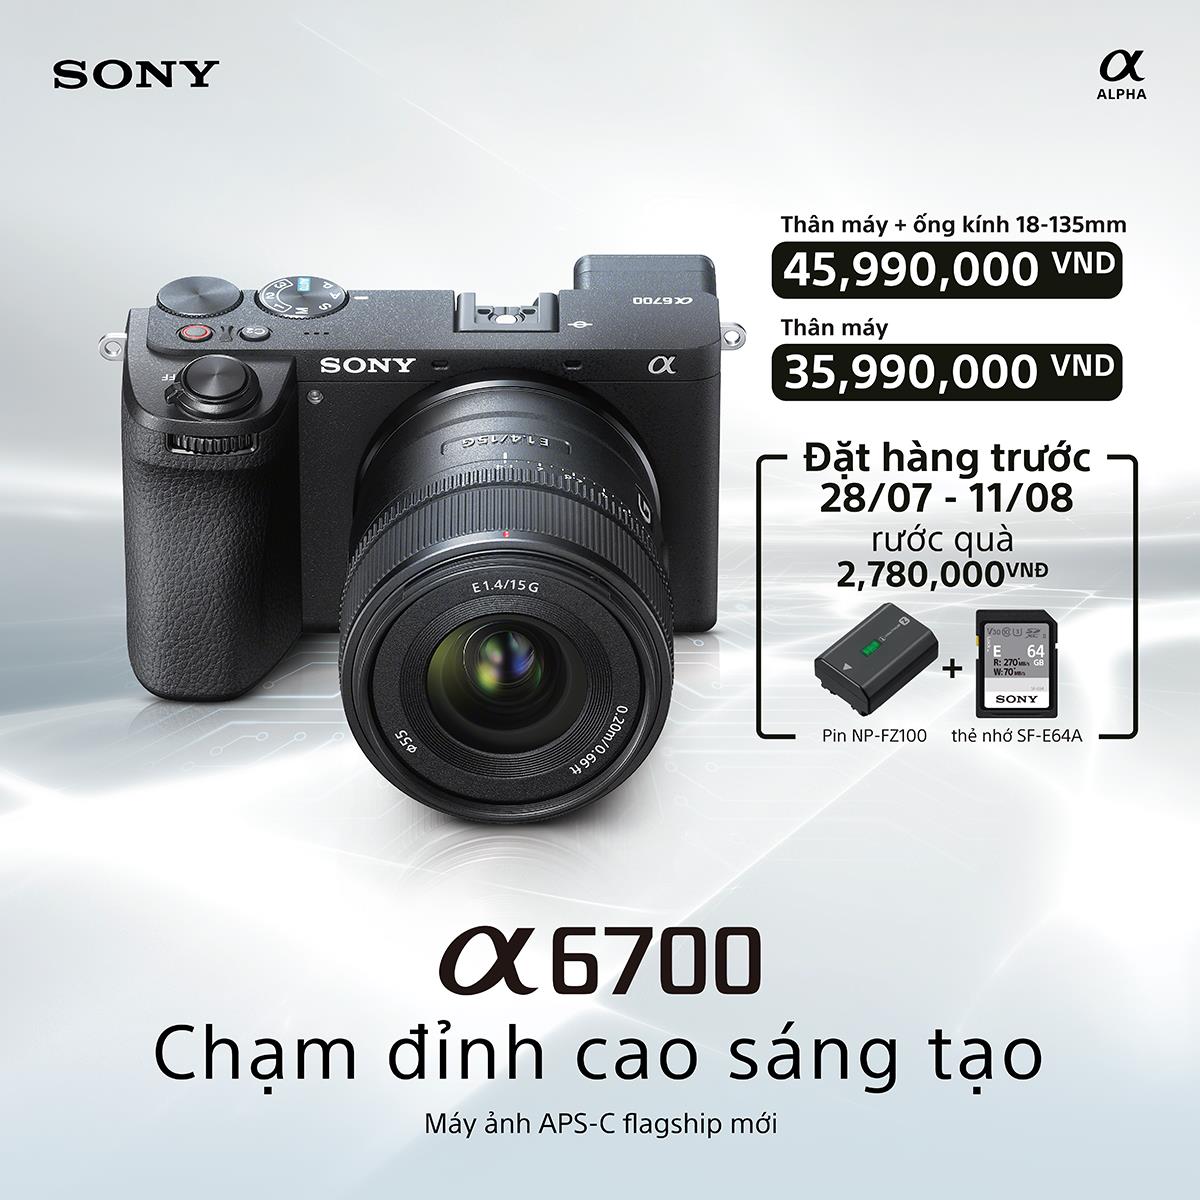 Sony ra mắt máy ảnh APS-C thế hệ mới α6700 mang đến chất lượng hình ảnh vượt trội và hiệu suất quay phim ấn tượng - Ảnh 5.